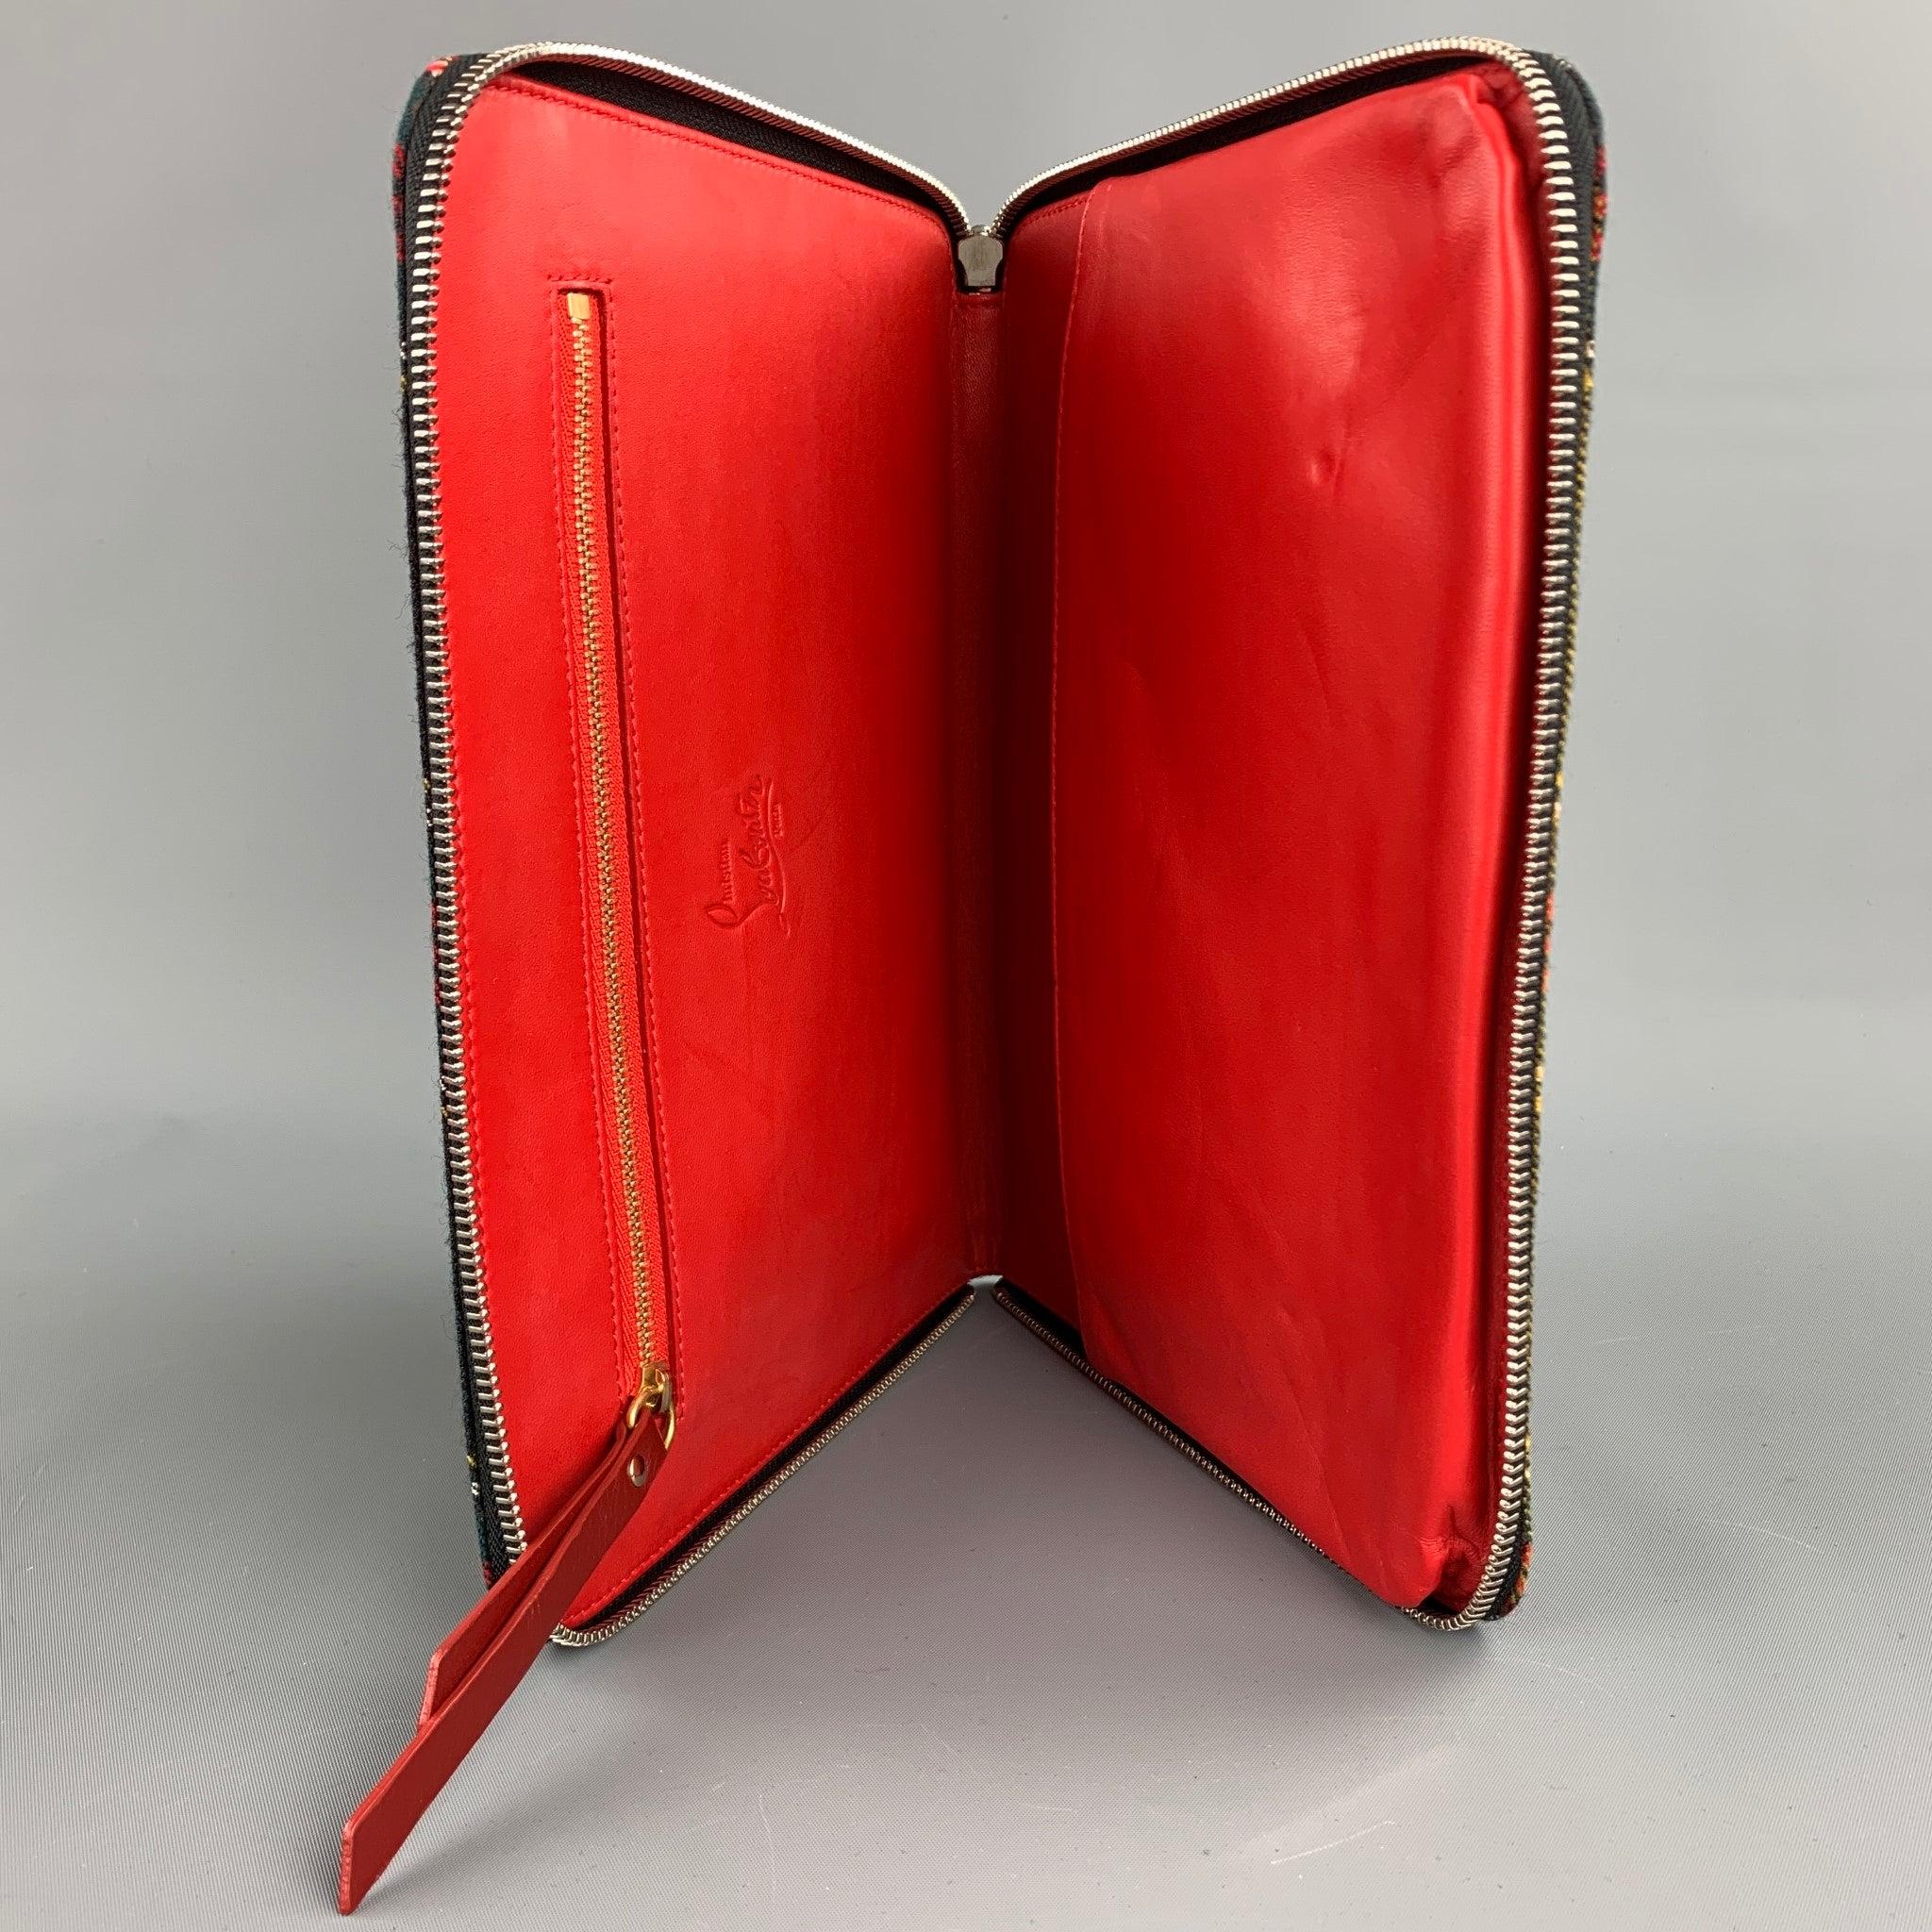 L'étui pour iPad de CHRISTIAN LOUBOUTIN se présente sous la forme d'une toile à carreaux noirs et rouges ornée de pointes, avec une lanière en cuir, une poche intérieure et une fermeture à glissière. Convient à un iPad normal.
Etat d'occasion.